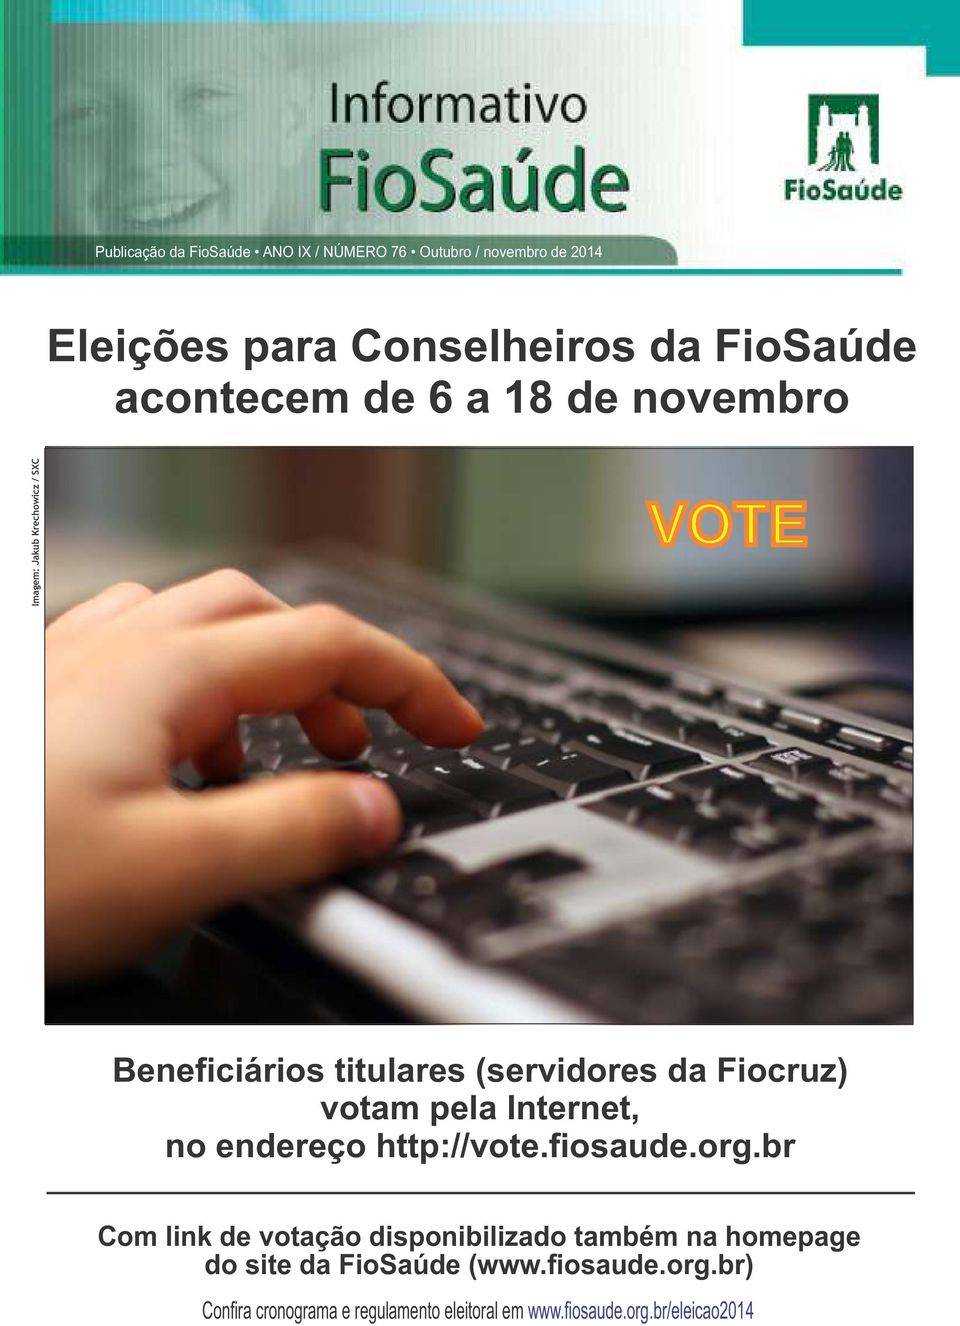 (servidores da Fiocruz) votam pela Internet, no endereço http://vote.fiosaude.org.